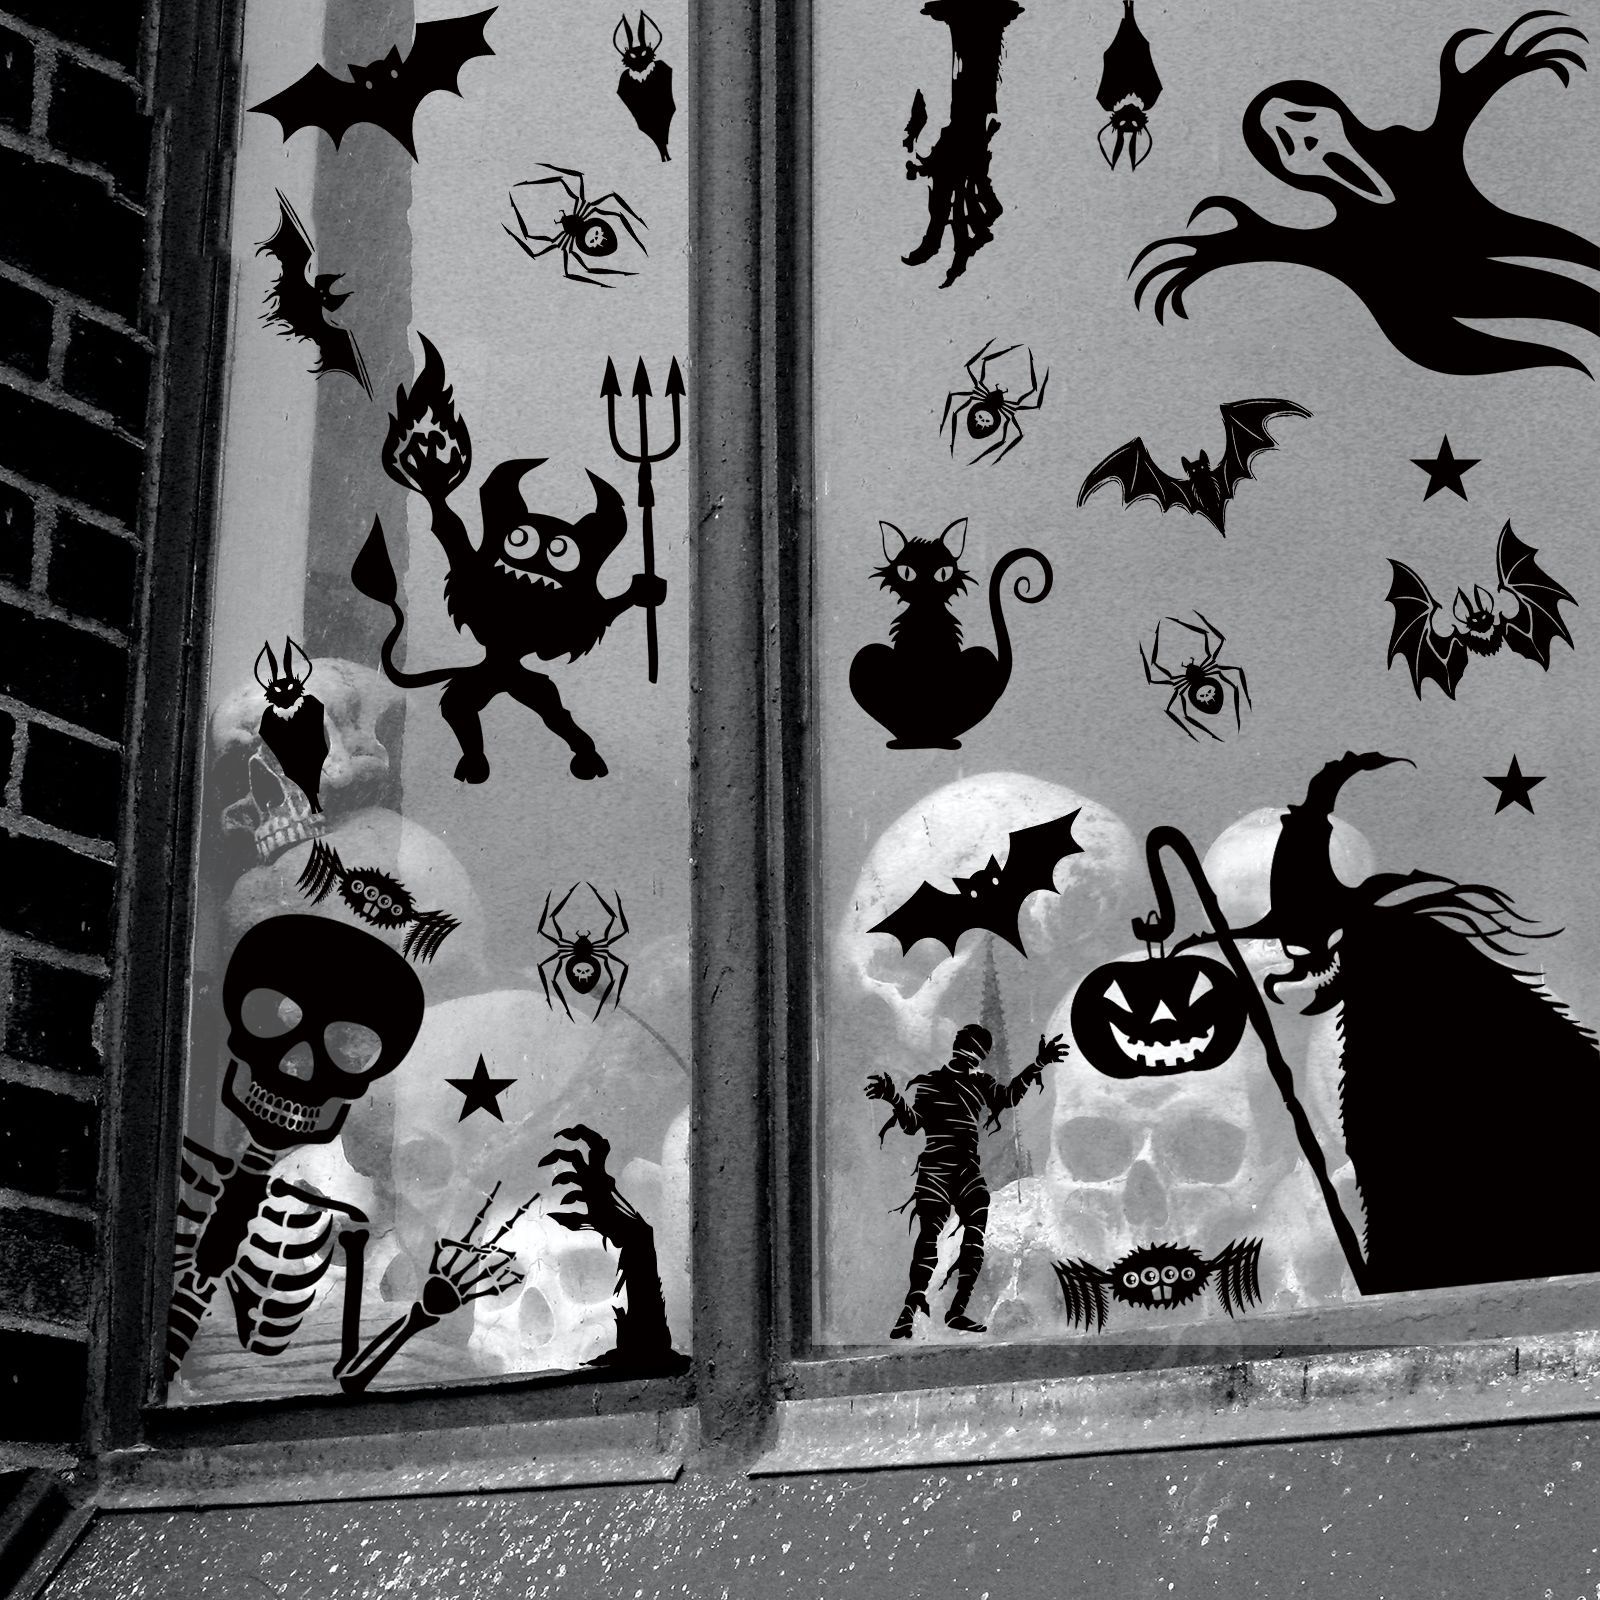 市場 ハロウィン飾り 送料無料 北欧壁紙 ハロウィンかぼちゃ ガイコツ ウィンドウシール ウォールステッカー 壁 インテリア ハロウィン 骸骨飾り 幽霊